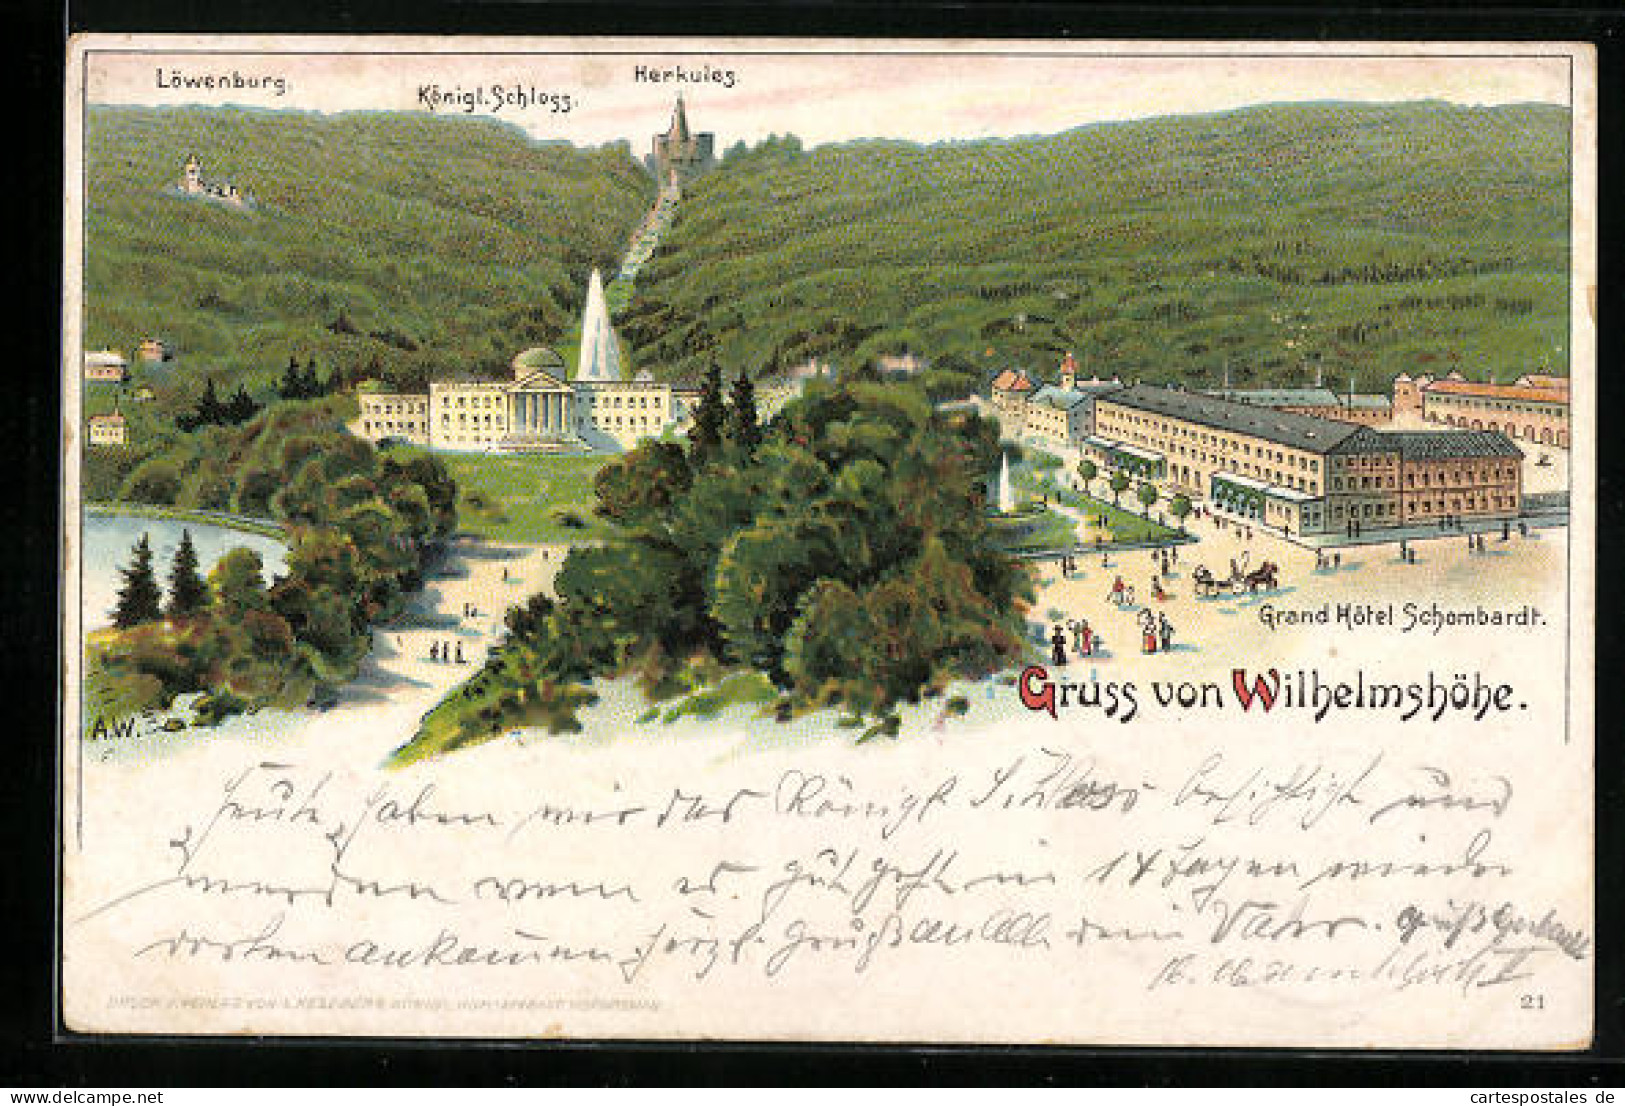 Lithographie Wilhelmshöhe, Grand Hotel Schombardt, Löwenburg, Königl. Schloss, Herkules  - Bad Koenig